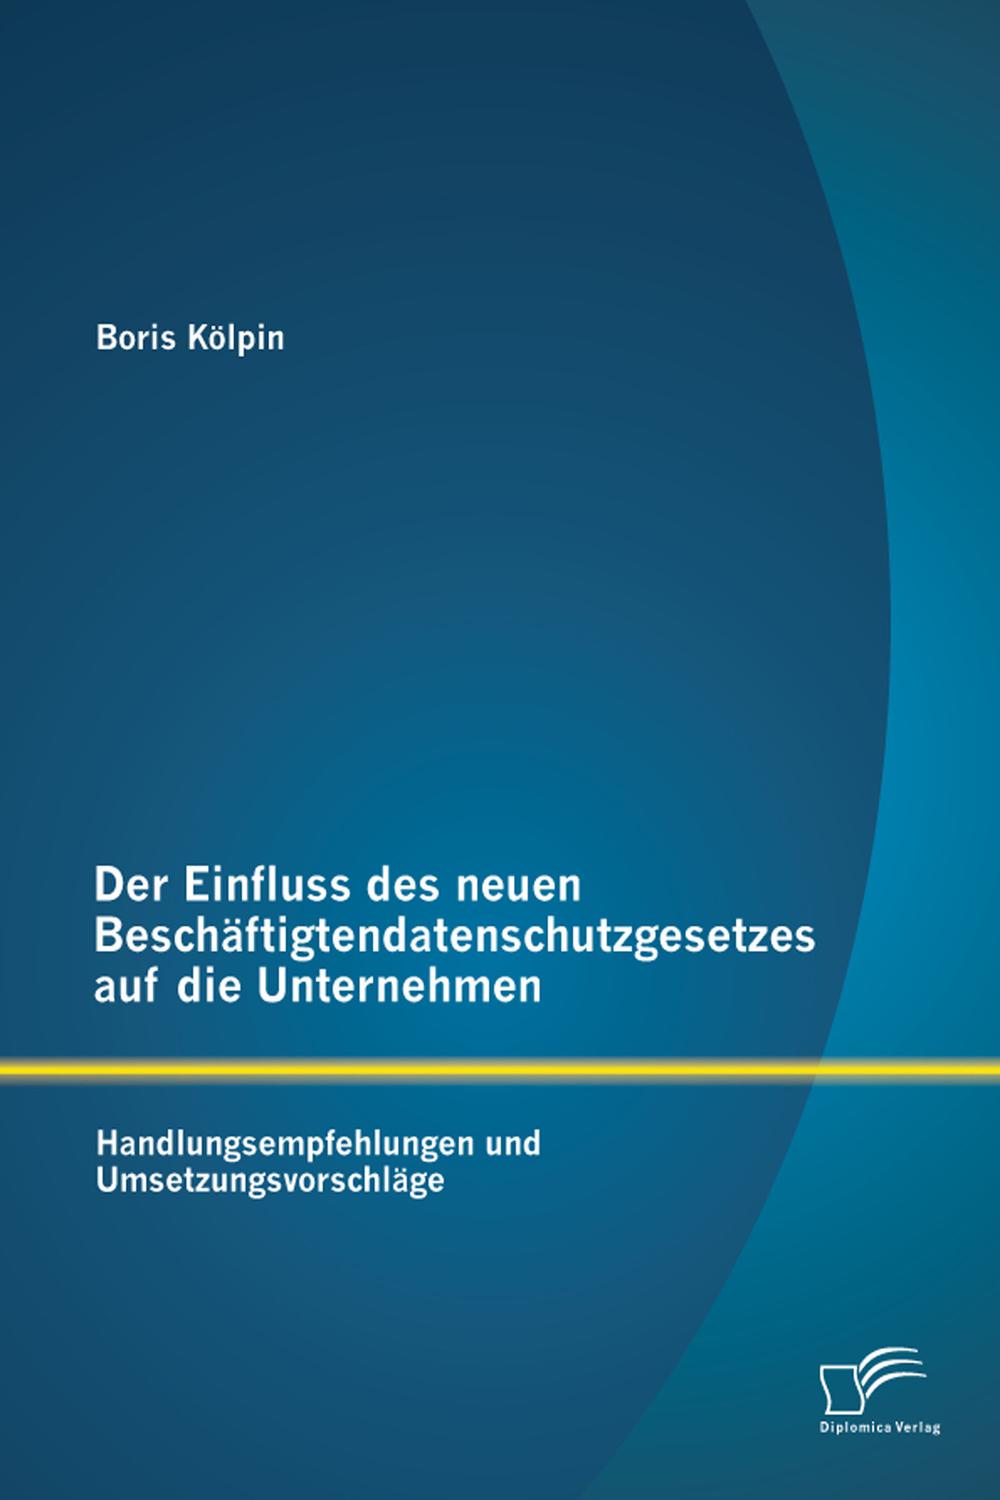 Der Einfluss des neuen Beschäftigtendatenschutzgesetzes auf die Unternehmen: Handlungsempfehlungen und Umsetzungsvorschläge - Boris Kölpin